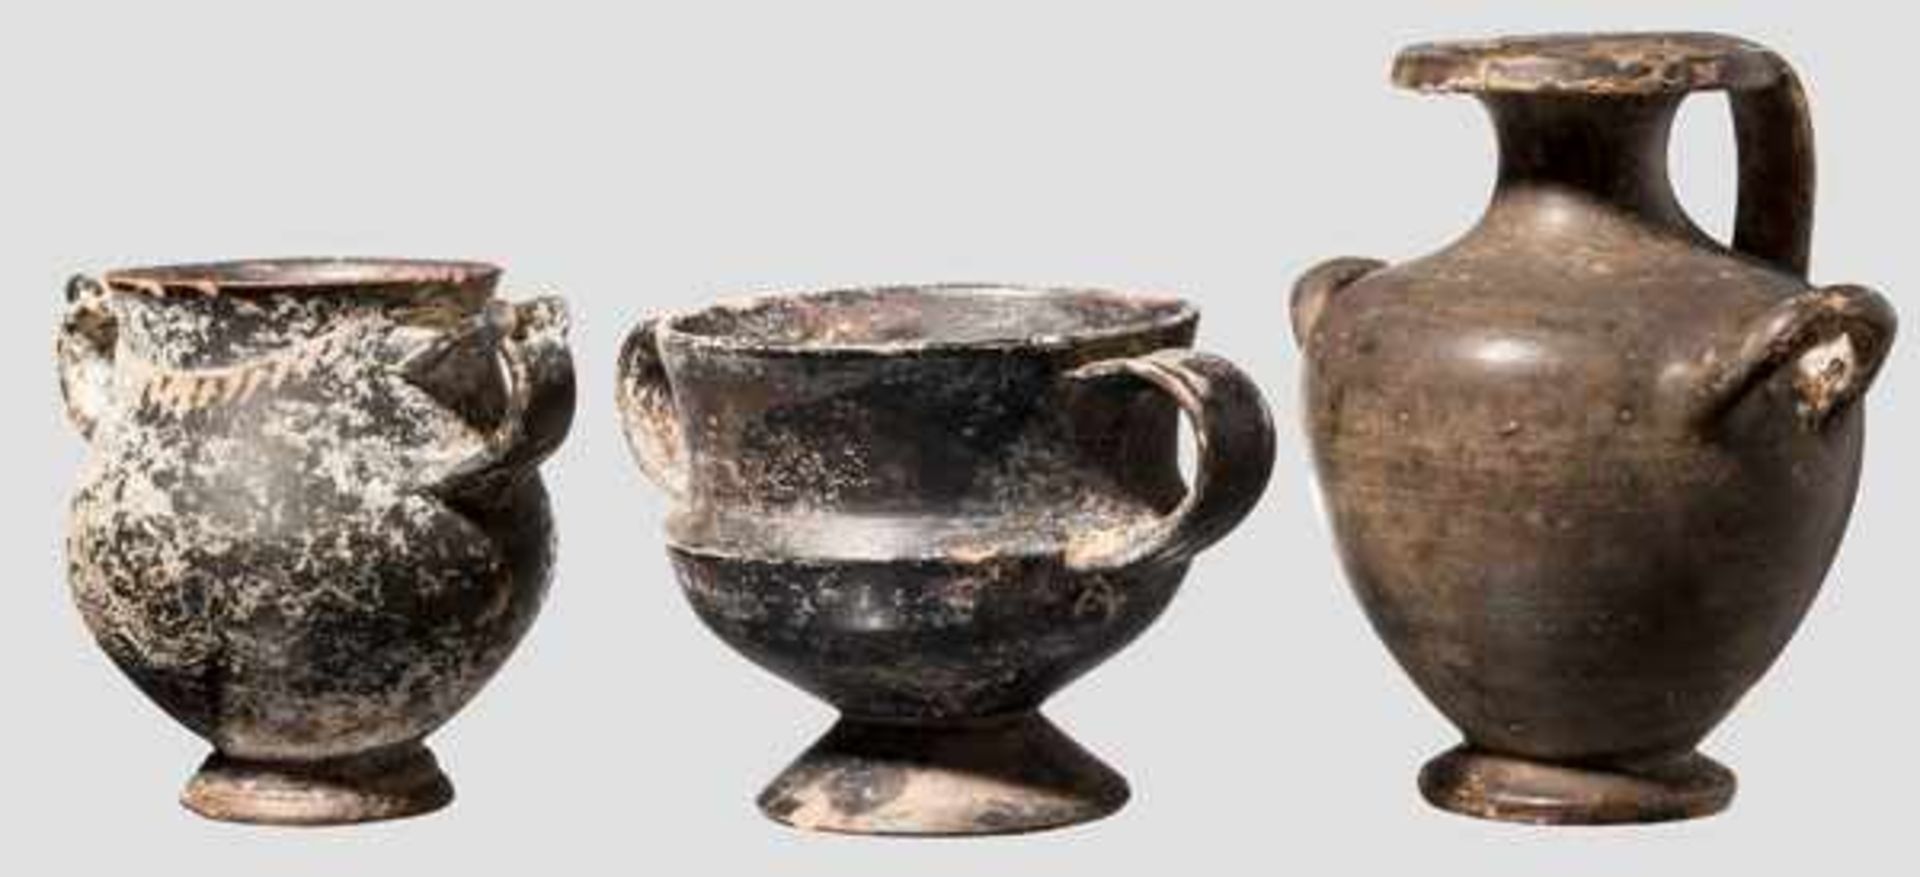 Drei Tongefäße, griechisch, 4. - 3. Jhdt. v. Chr. Miniatur-Hydria. Sienafarbene Engobe. Kleiner